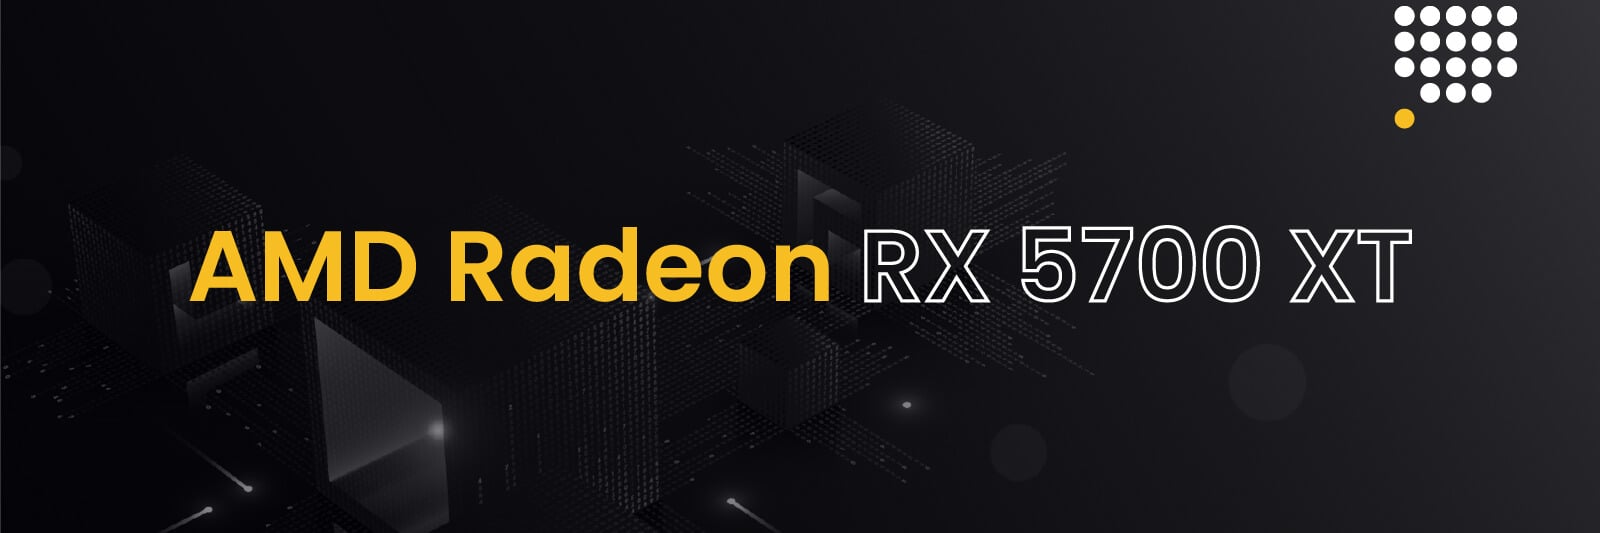 best gpu for mining -AMD-Radeon-RX-5700-XT